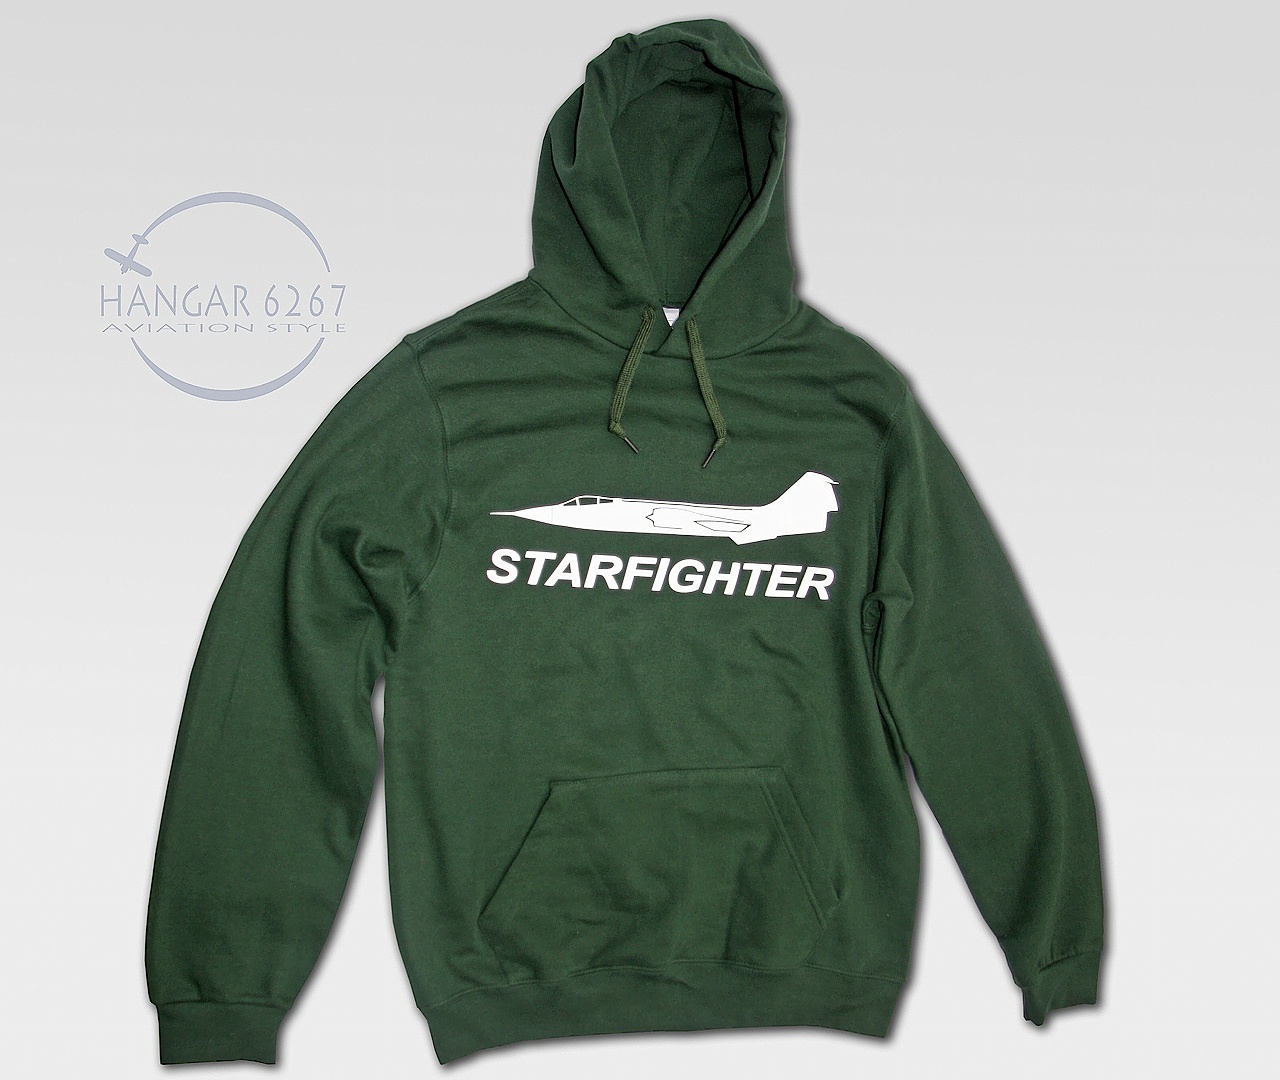 “STARFIGHTER” – felpa con cappuccio e tasca marsupio